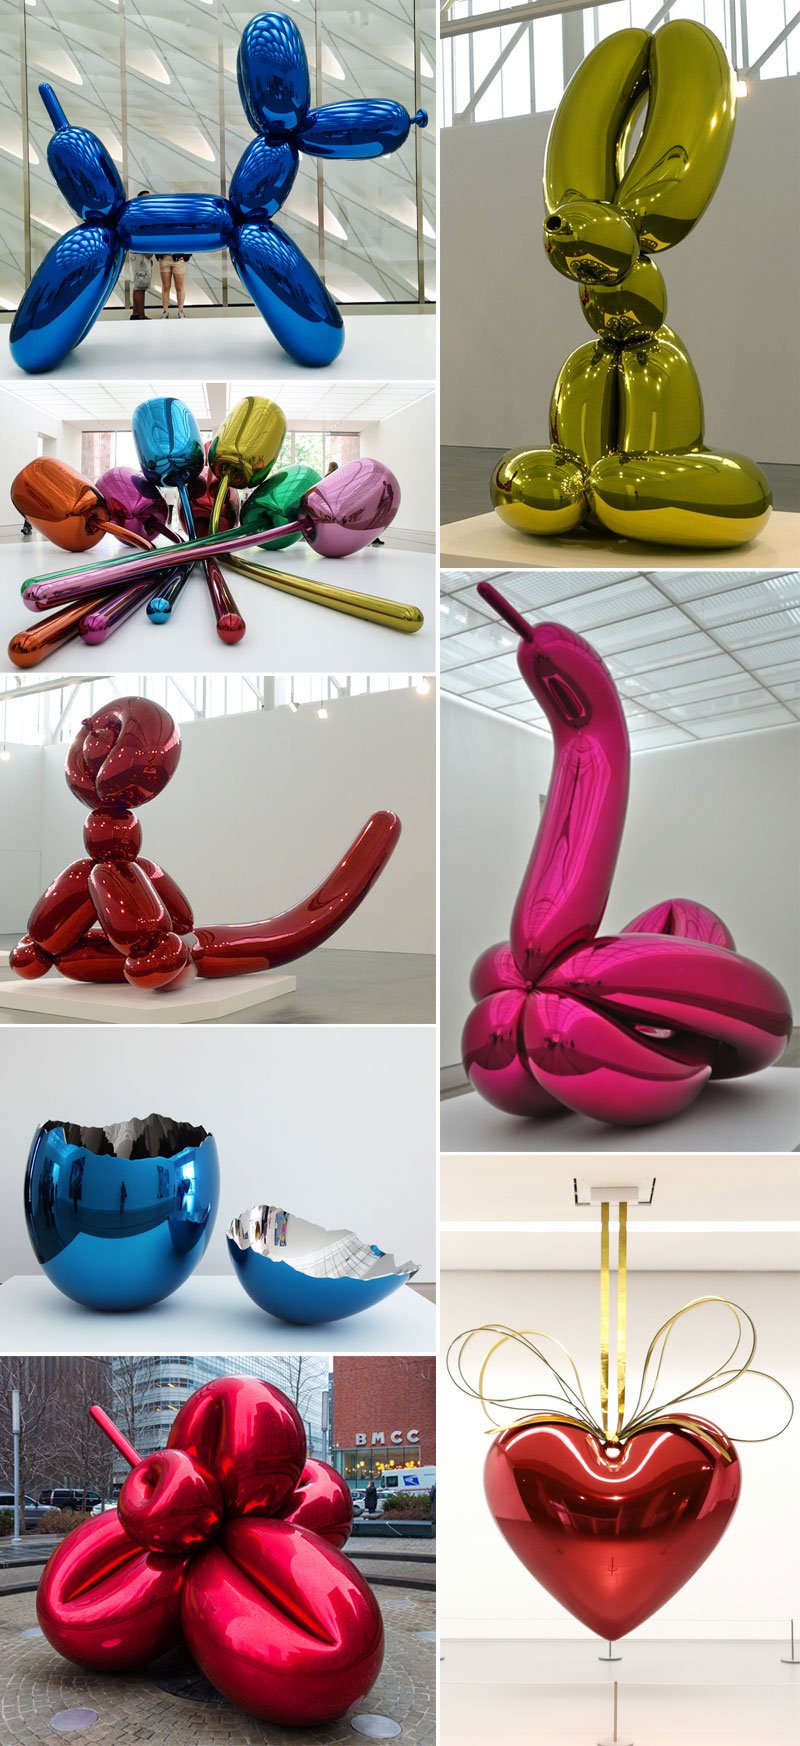 Jeff koons metal balloon art sculptures designs